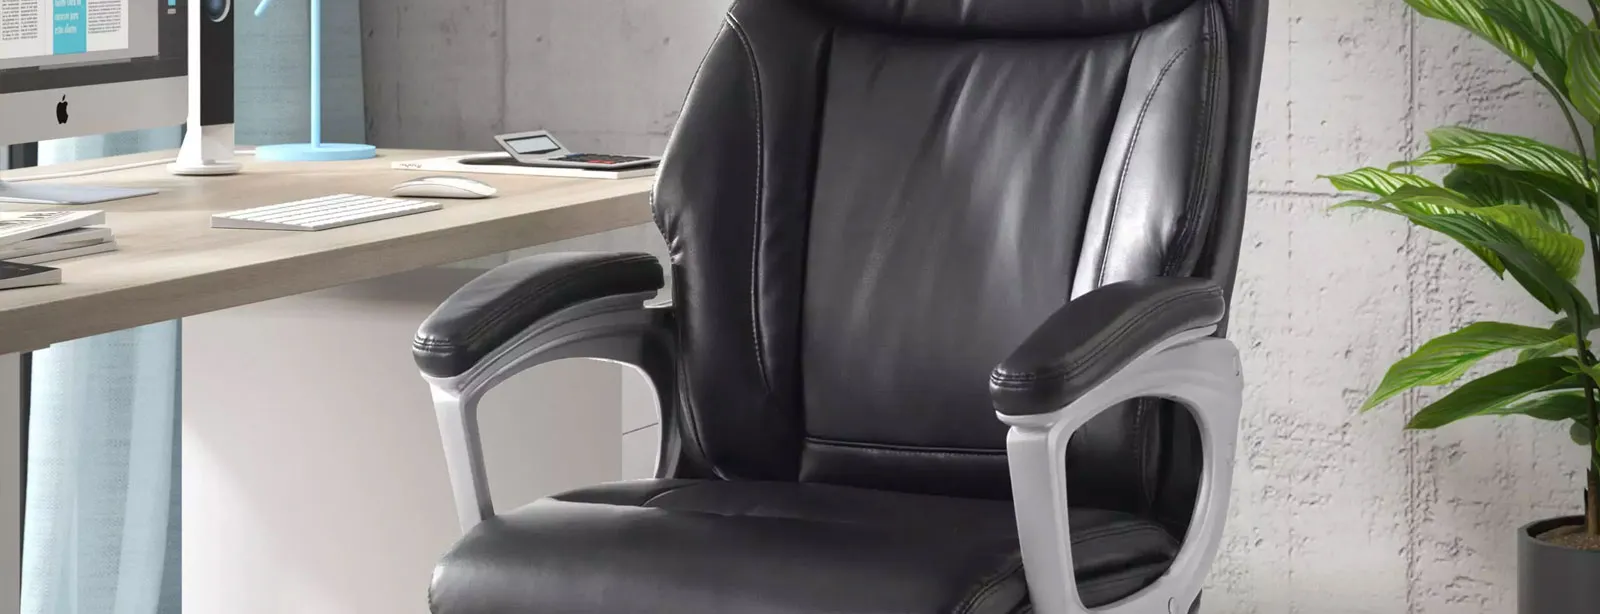 Cadeiras de escritório XXL: Móveis que suportam o peso sem problema